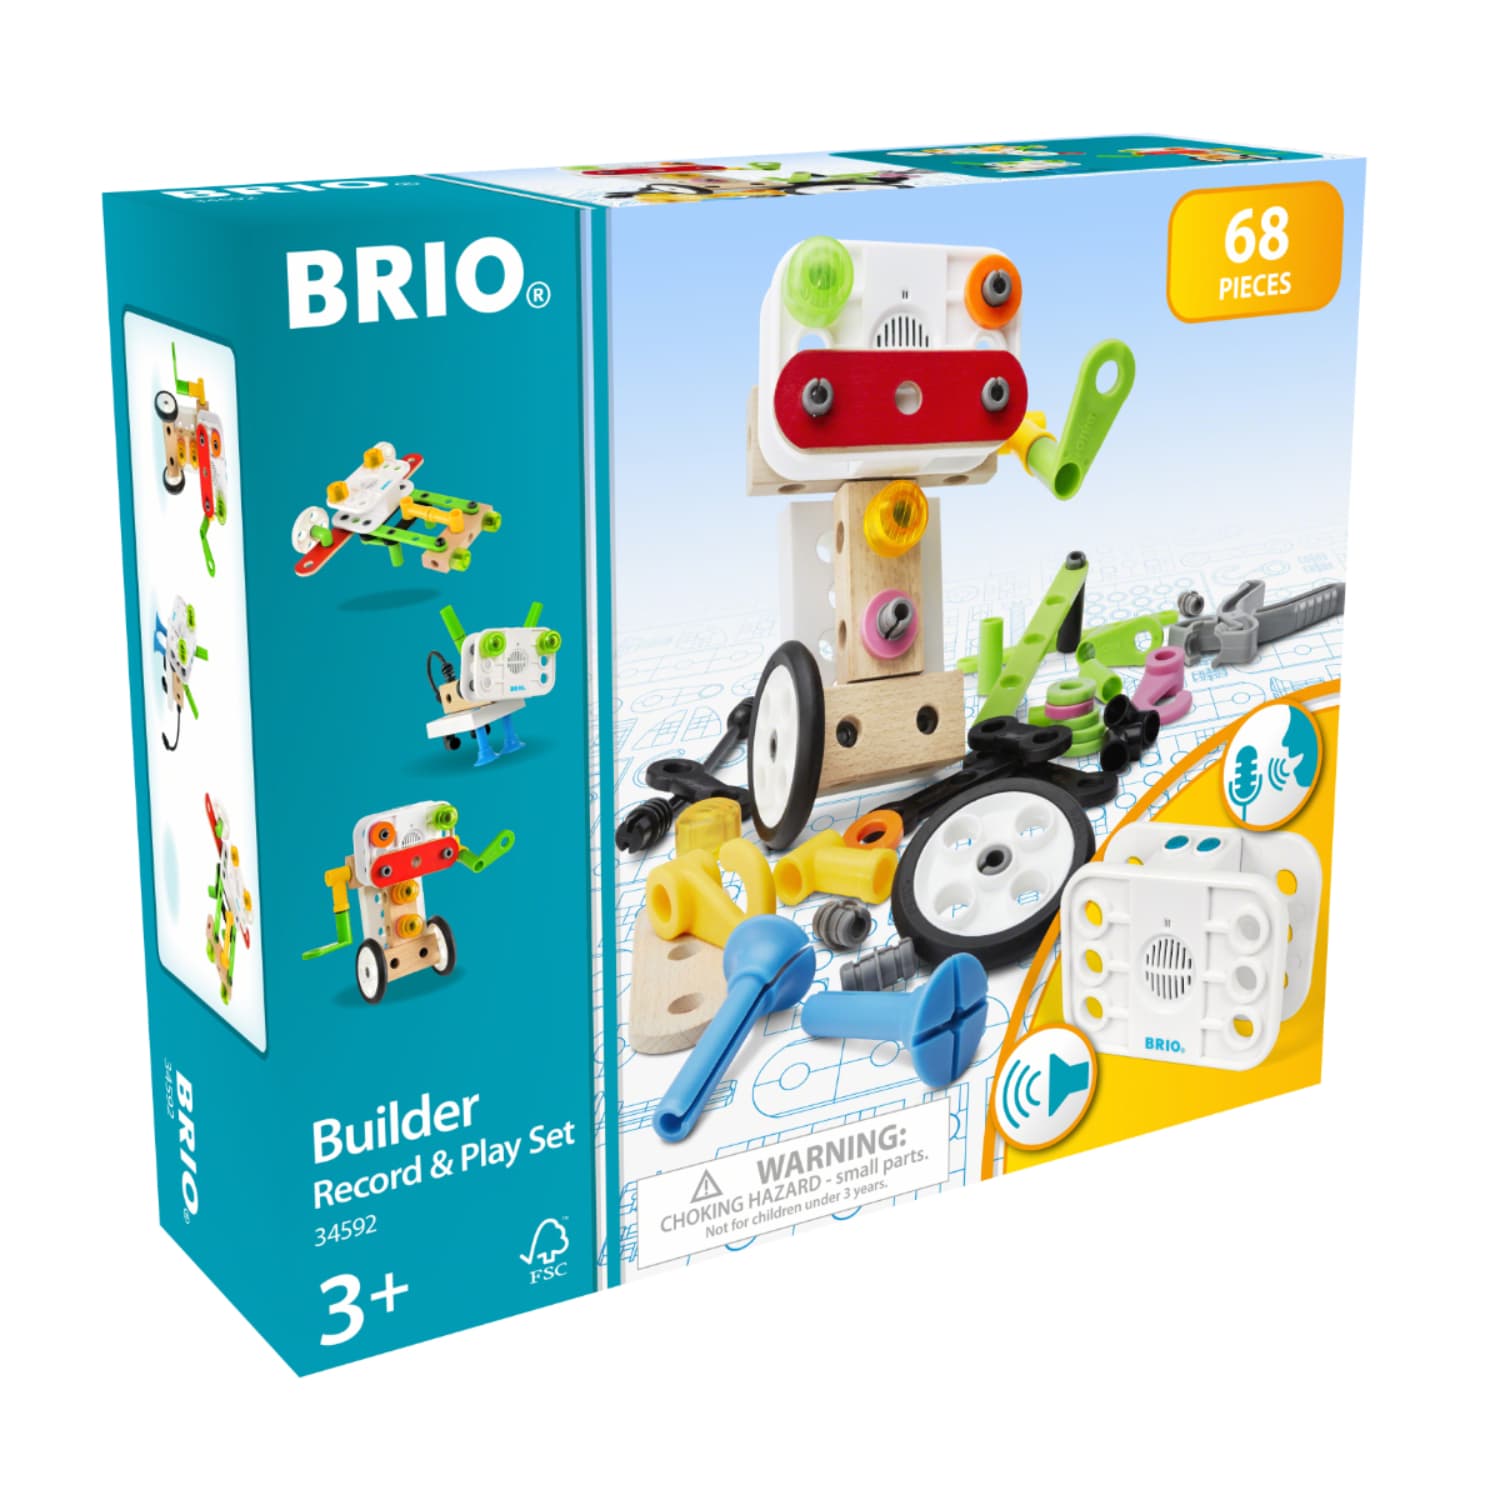 BRIO ブリオ ビルダー レコード&プレイセット 全68ピース 積み木 知育玩具 正規輸入品